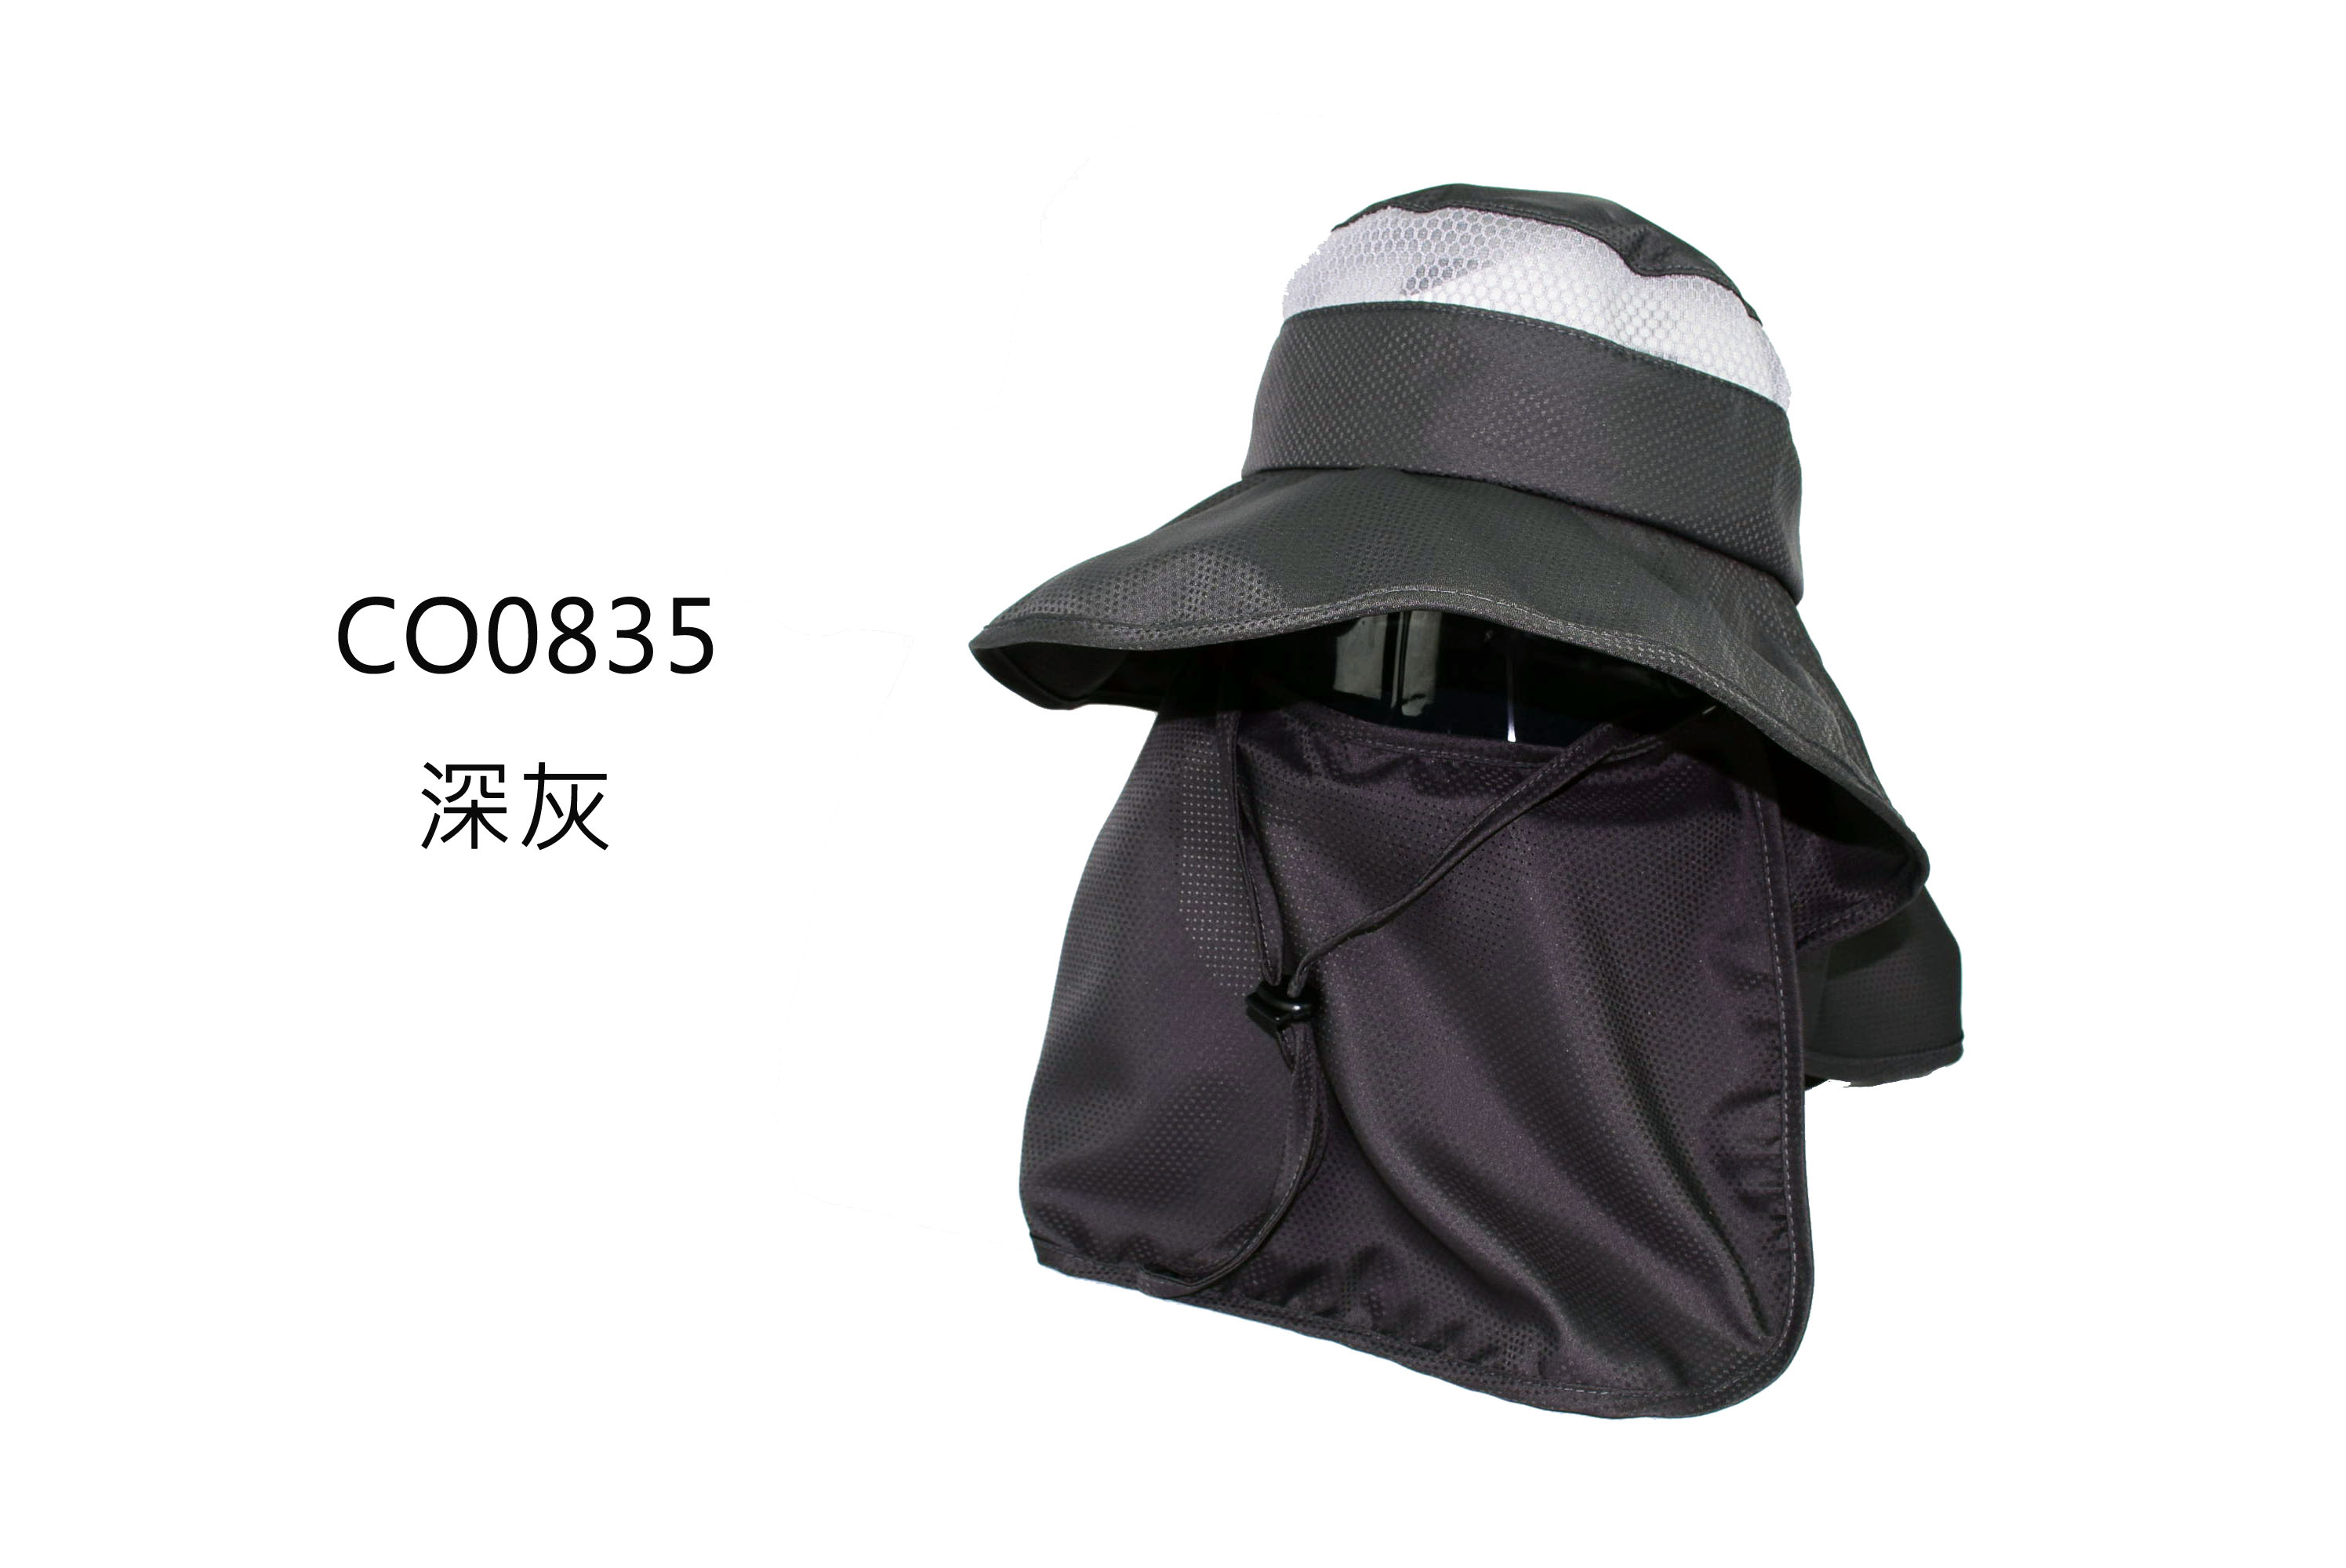 CO0835 全防護抗曬戶外休閒帽 點點透氣型布料 前後披型護頸 三星製帽